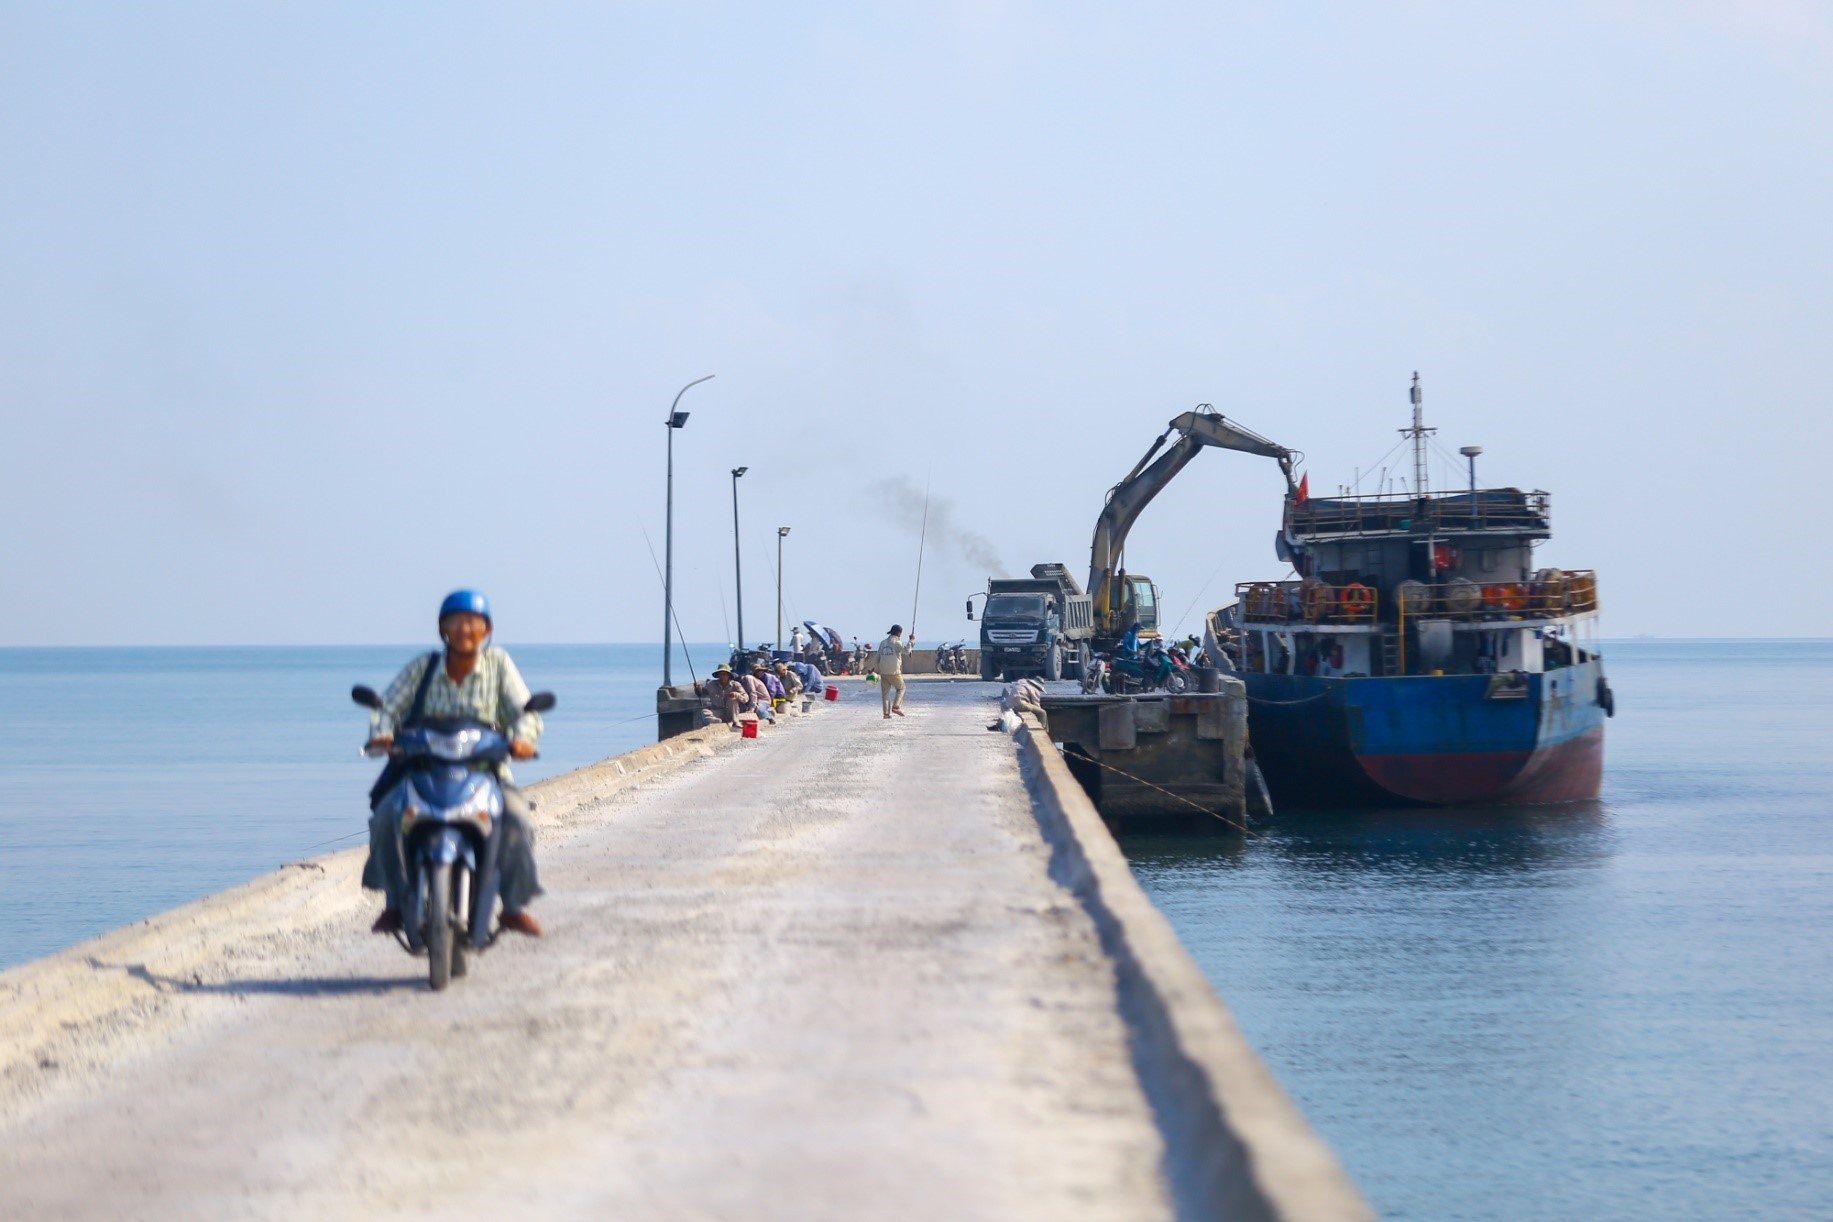 Toàn cảnh vị trí sắp khởi công xây dựng cảng biển 3.400 tỉ đồng ở Đà Nẵng-5